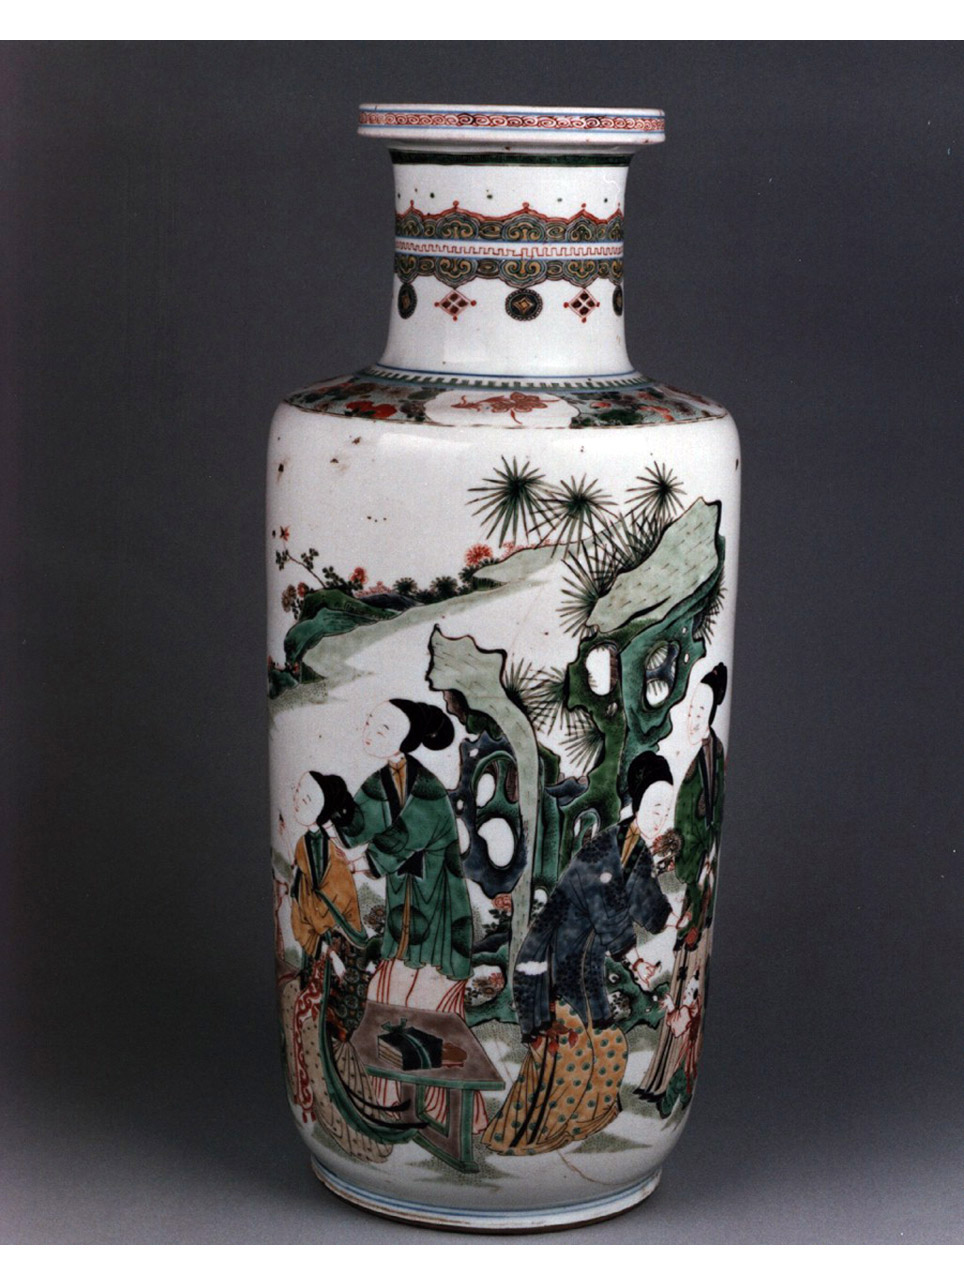 paesaggio con figure femminili e bambini (vaso) - manifattura cinese (secc. XVII/ XVIII)